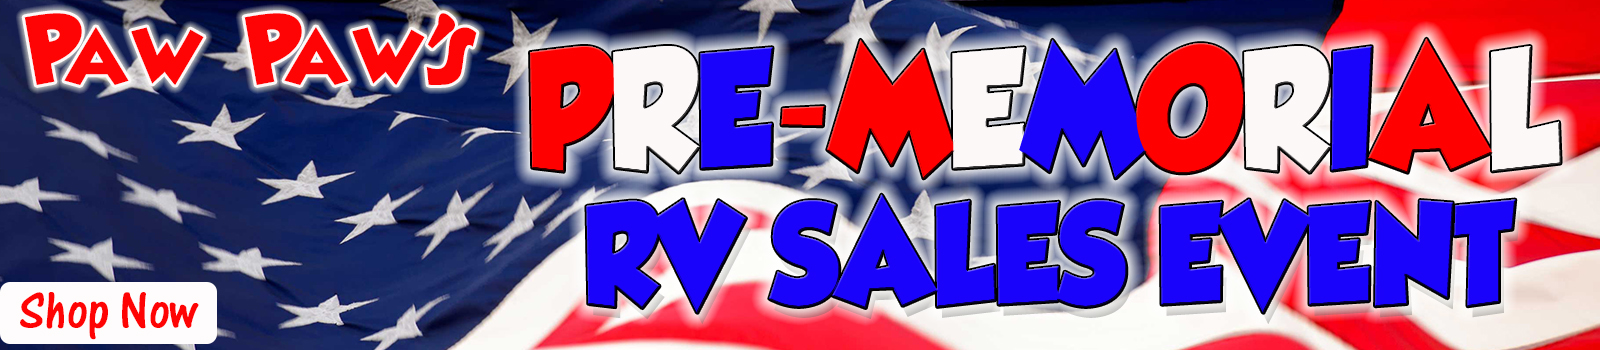 Pre Memorial RV Sale